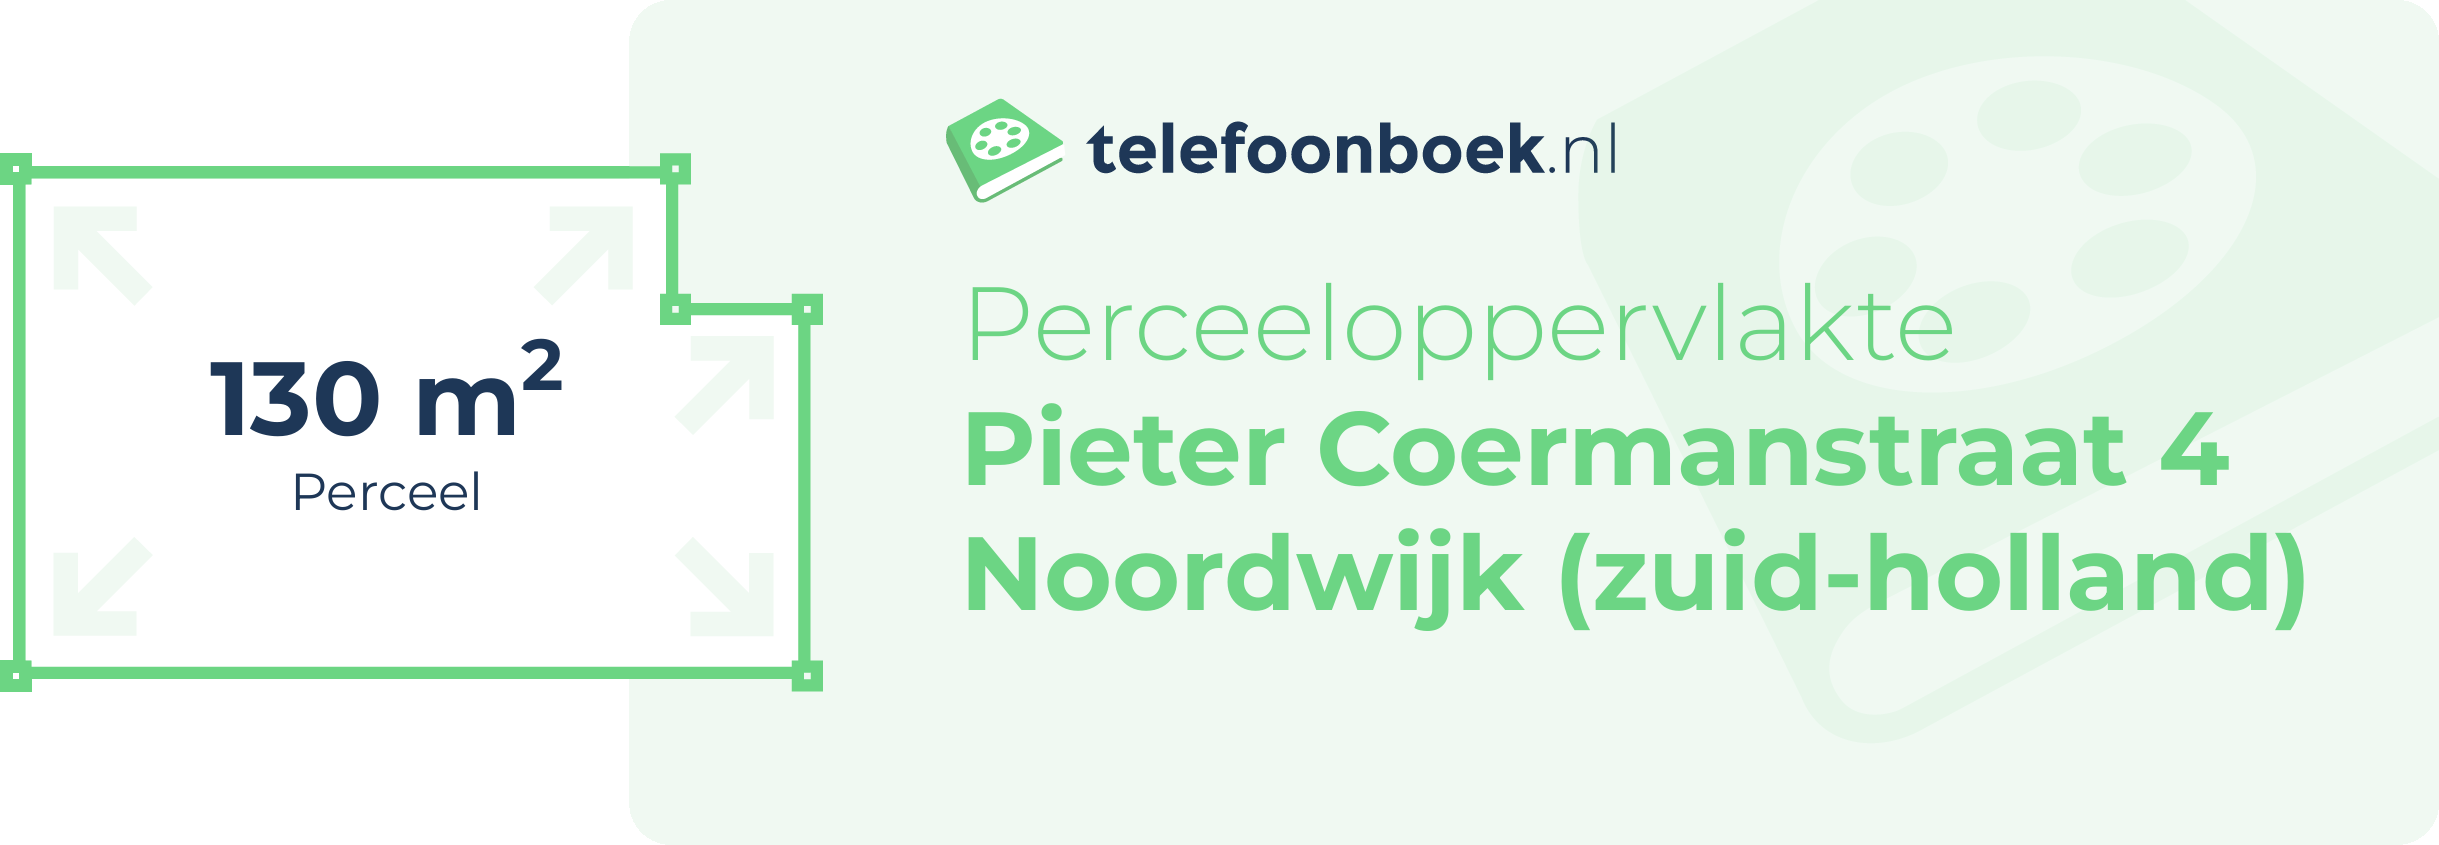 Perceeloppervlakte Pieter Coermanstraat 4 Noordwijk (Zuid-Holland)